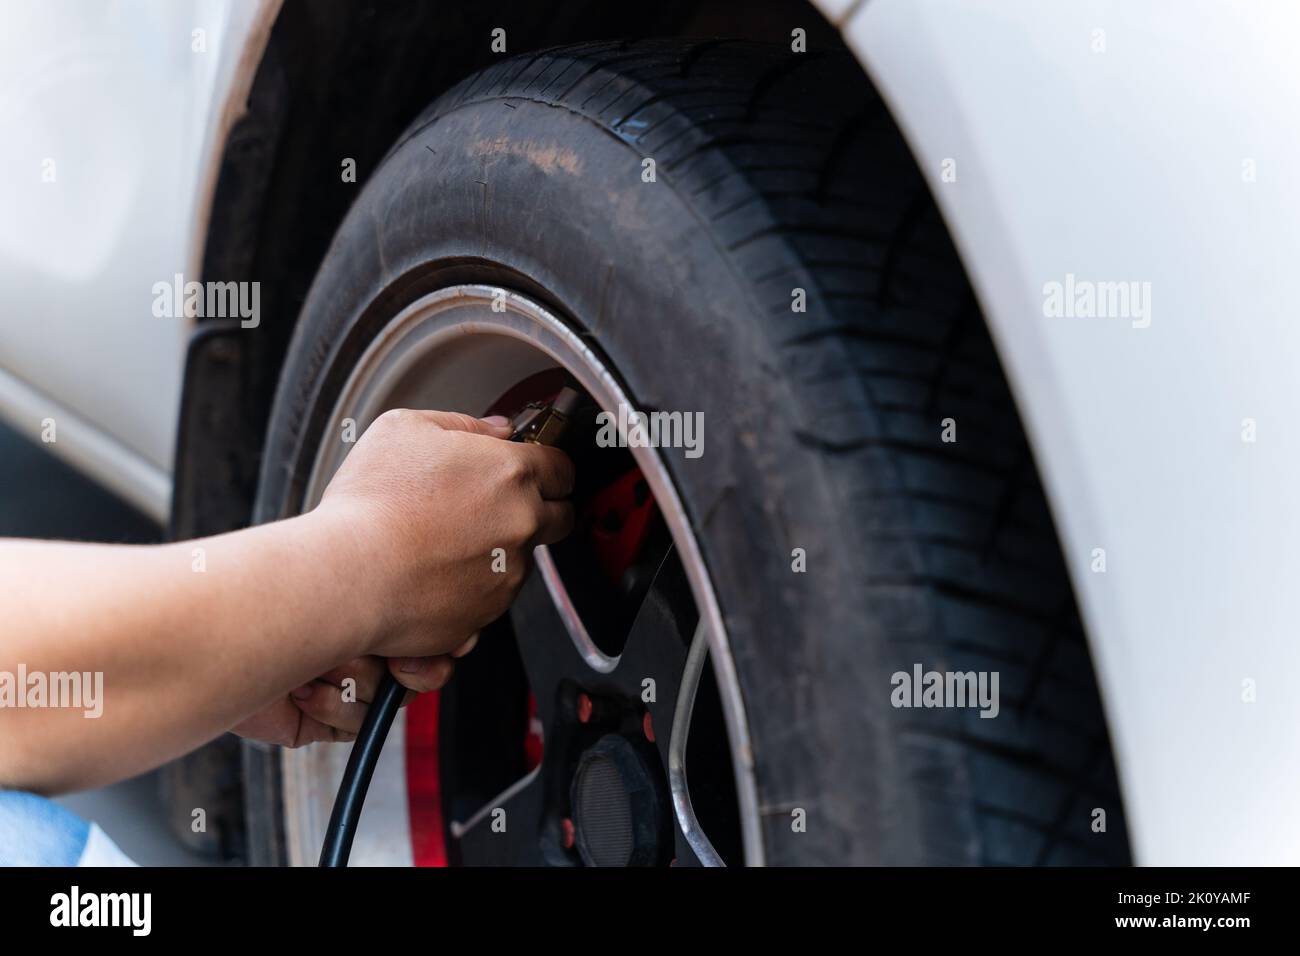 Primo piano di uomo che riempie aria negli pneumatici della sua auto. La mano e la ruota dell'auto aggiungono pressione dell'aria. Foto Stock